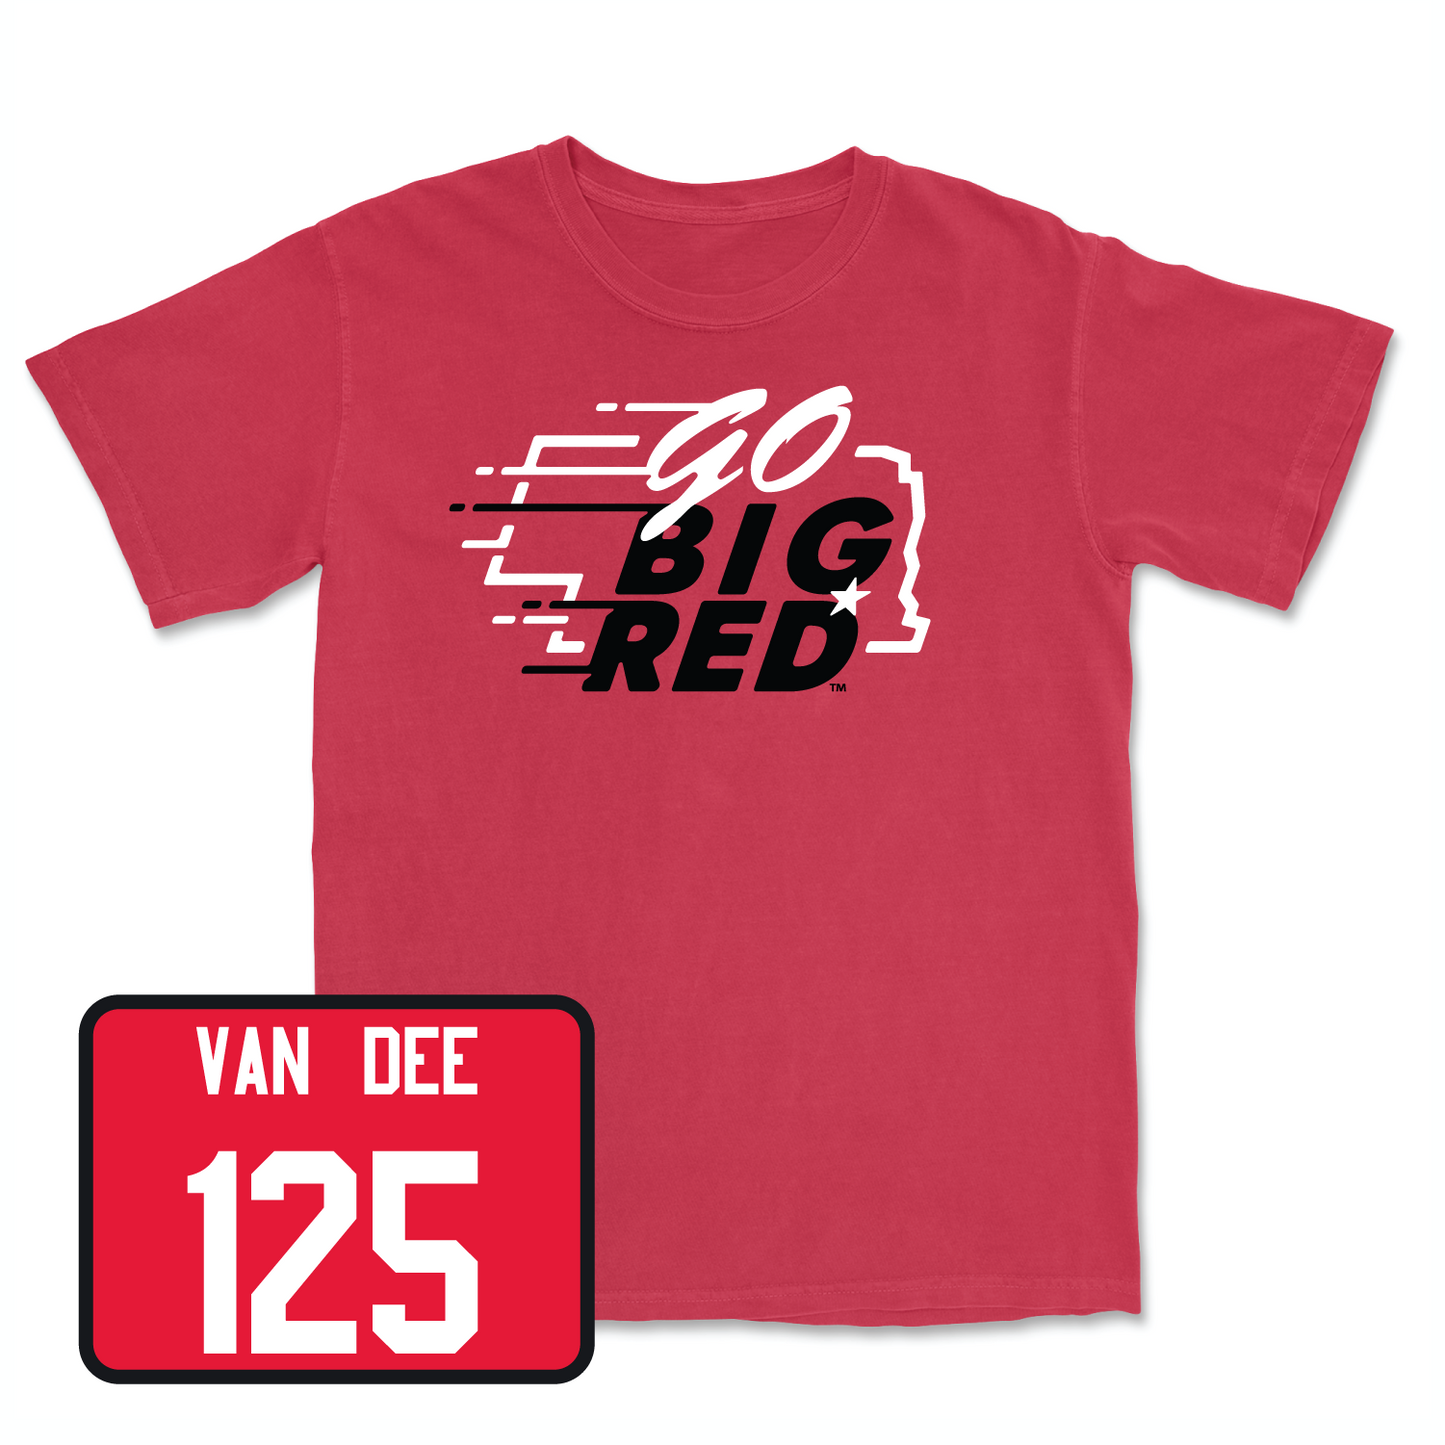 Red Wrestling GBR Tee Large / Jacob Van Dee | #125